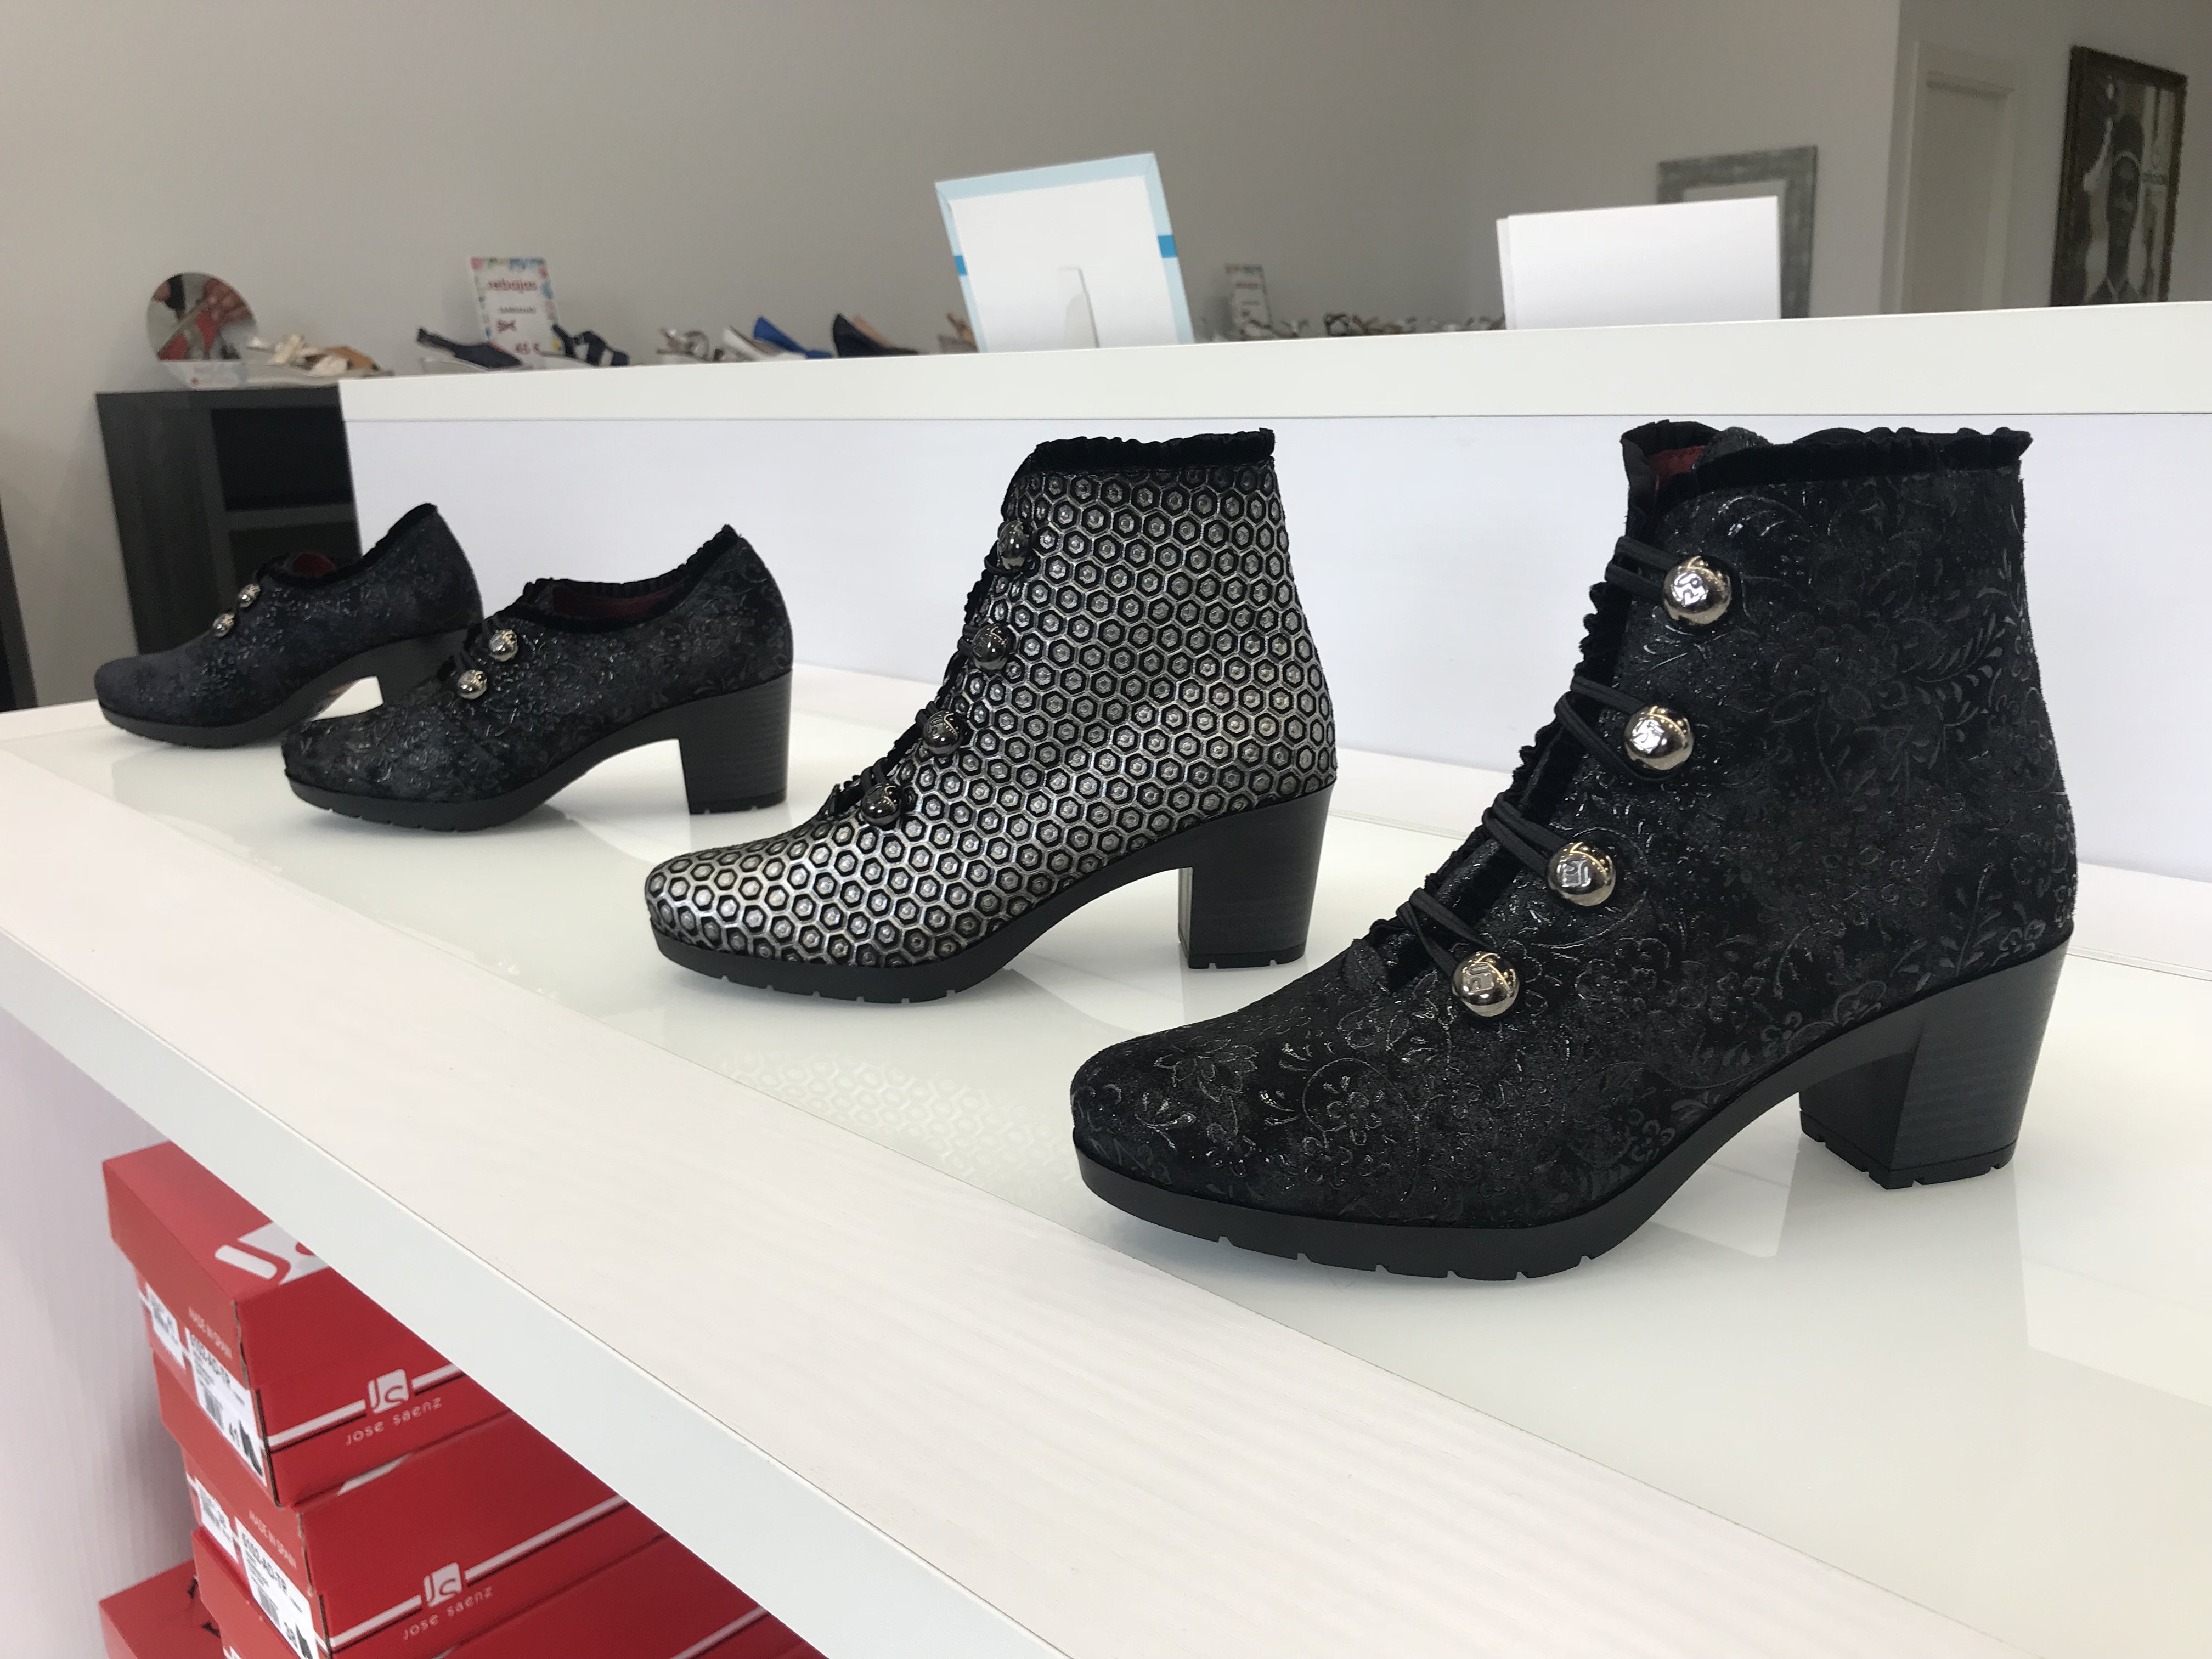 Arnedo Calzado on Twitter: "Nueva temporada Otoño Invierno 2018 en la tienda oficial @JoseSaenzShoes de Arnedo. Diseño y confort únicos en zapatos, botas y botines de nueva colección, muestras nº 37